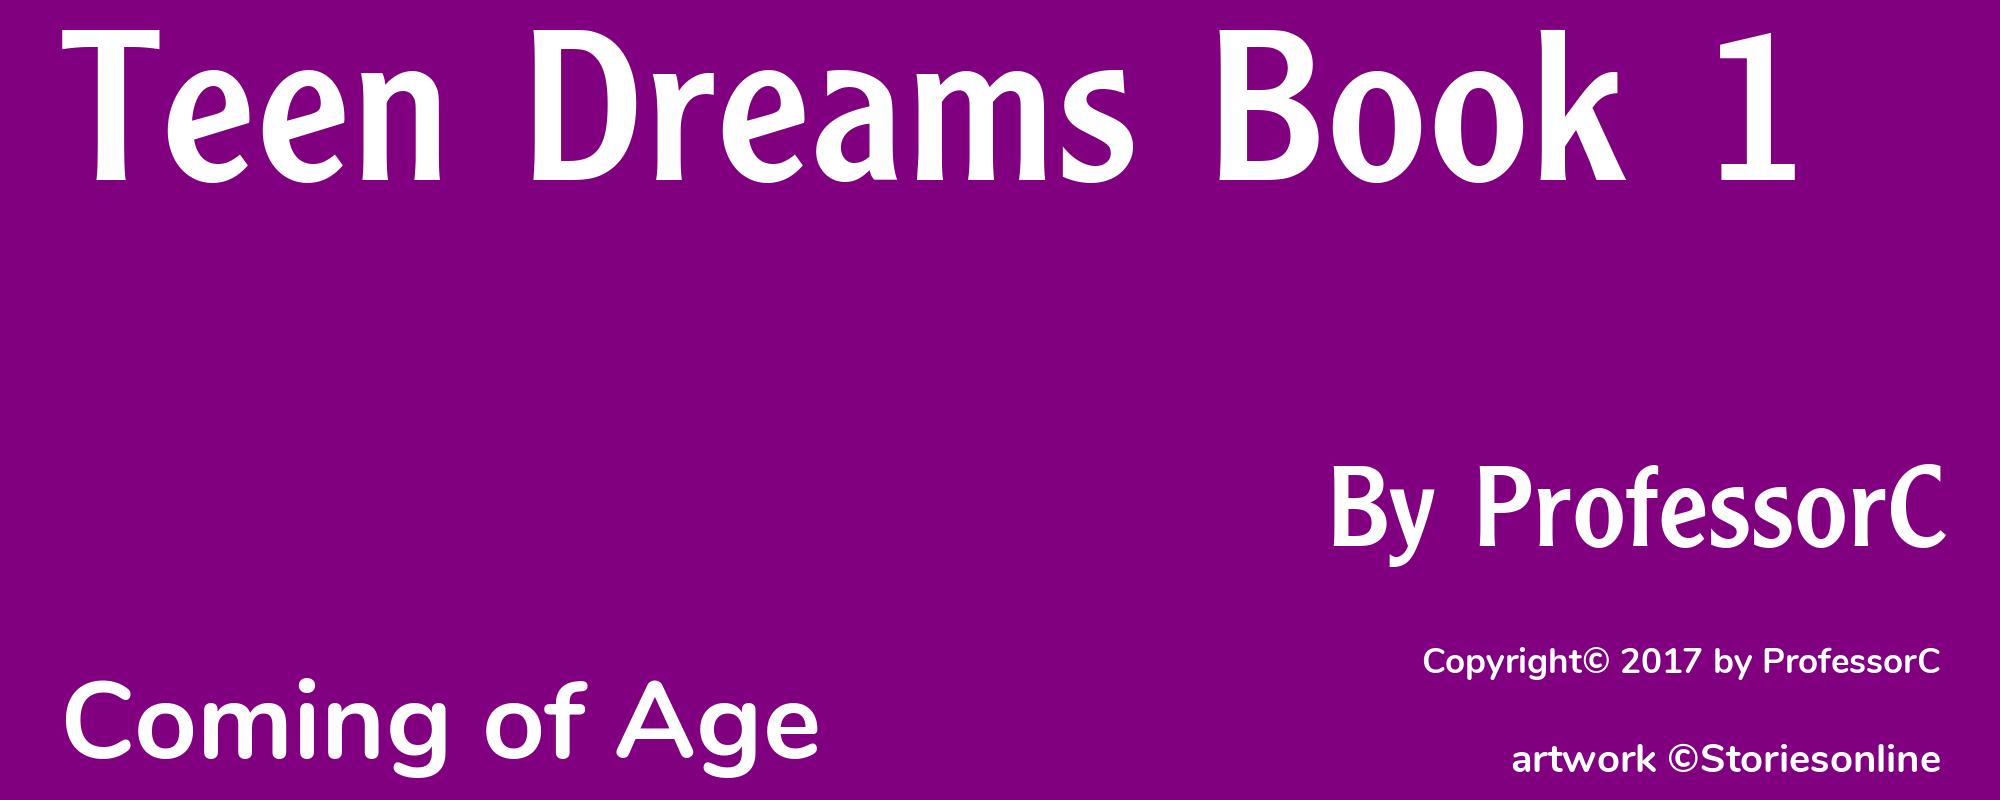 Teen Dreams Book 1 - Cover